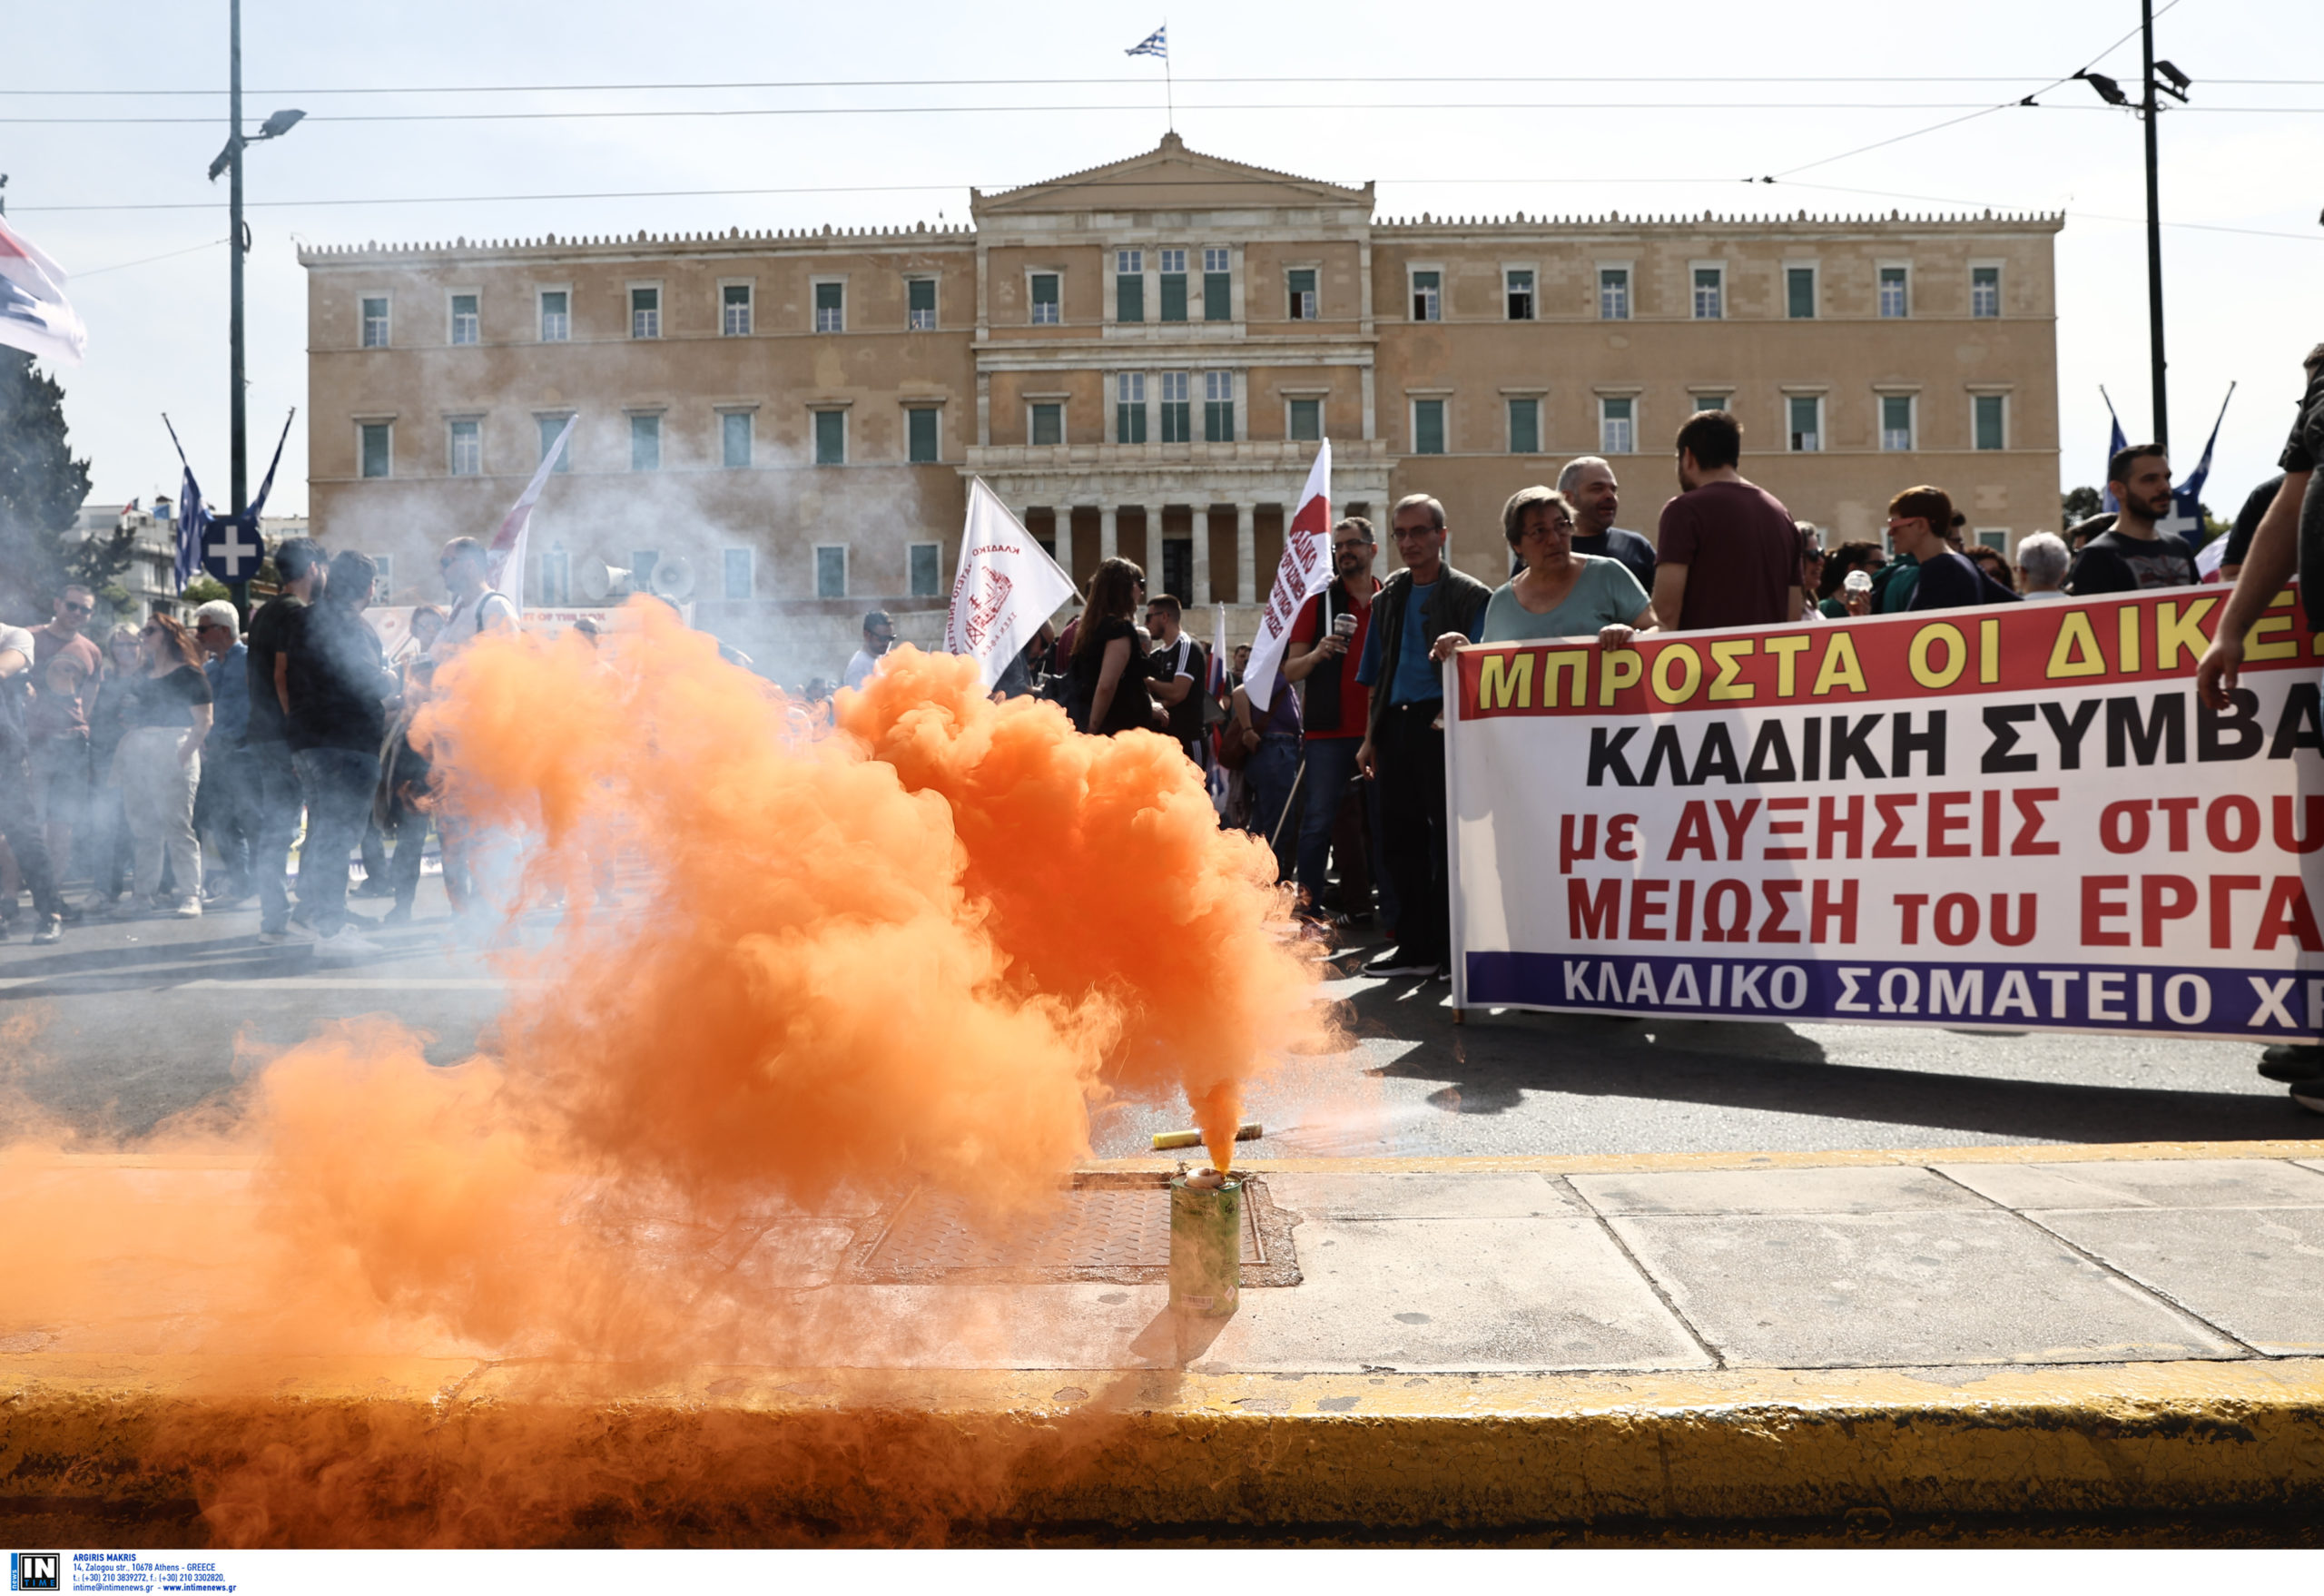 Απεργία 17/4: Χιλιάδες διαδήλωσαν στην Αθήνα για συλλογικές συμβάσεις με αυξήσεις μισθών – Άνοιξαν οι δρόμοι στο κέντρο – ΦΩΤΟ και ΒΙΝΤΕΟ